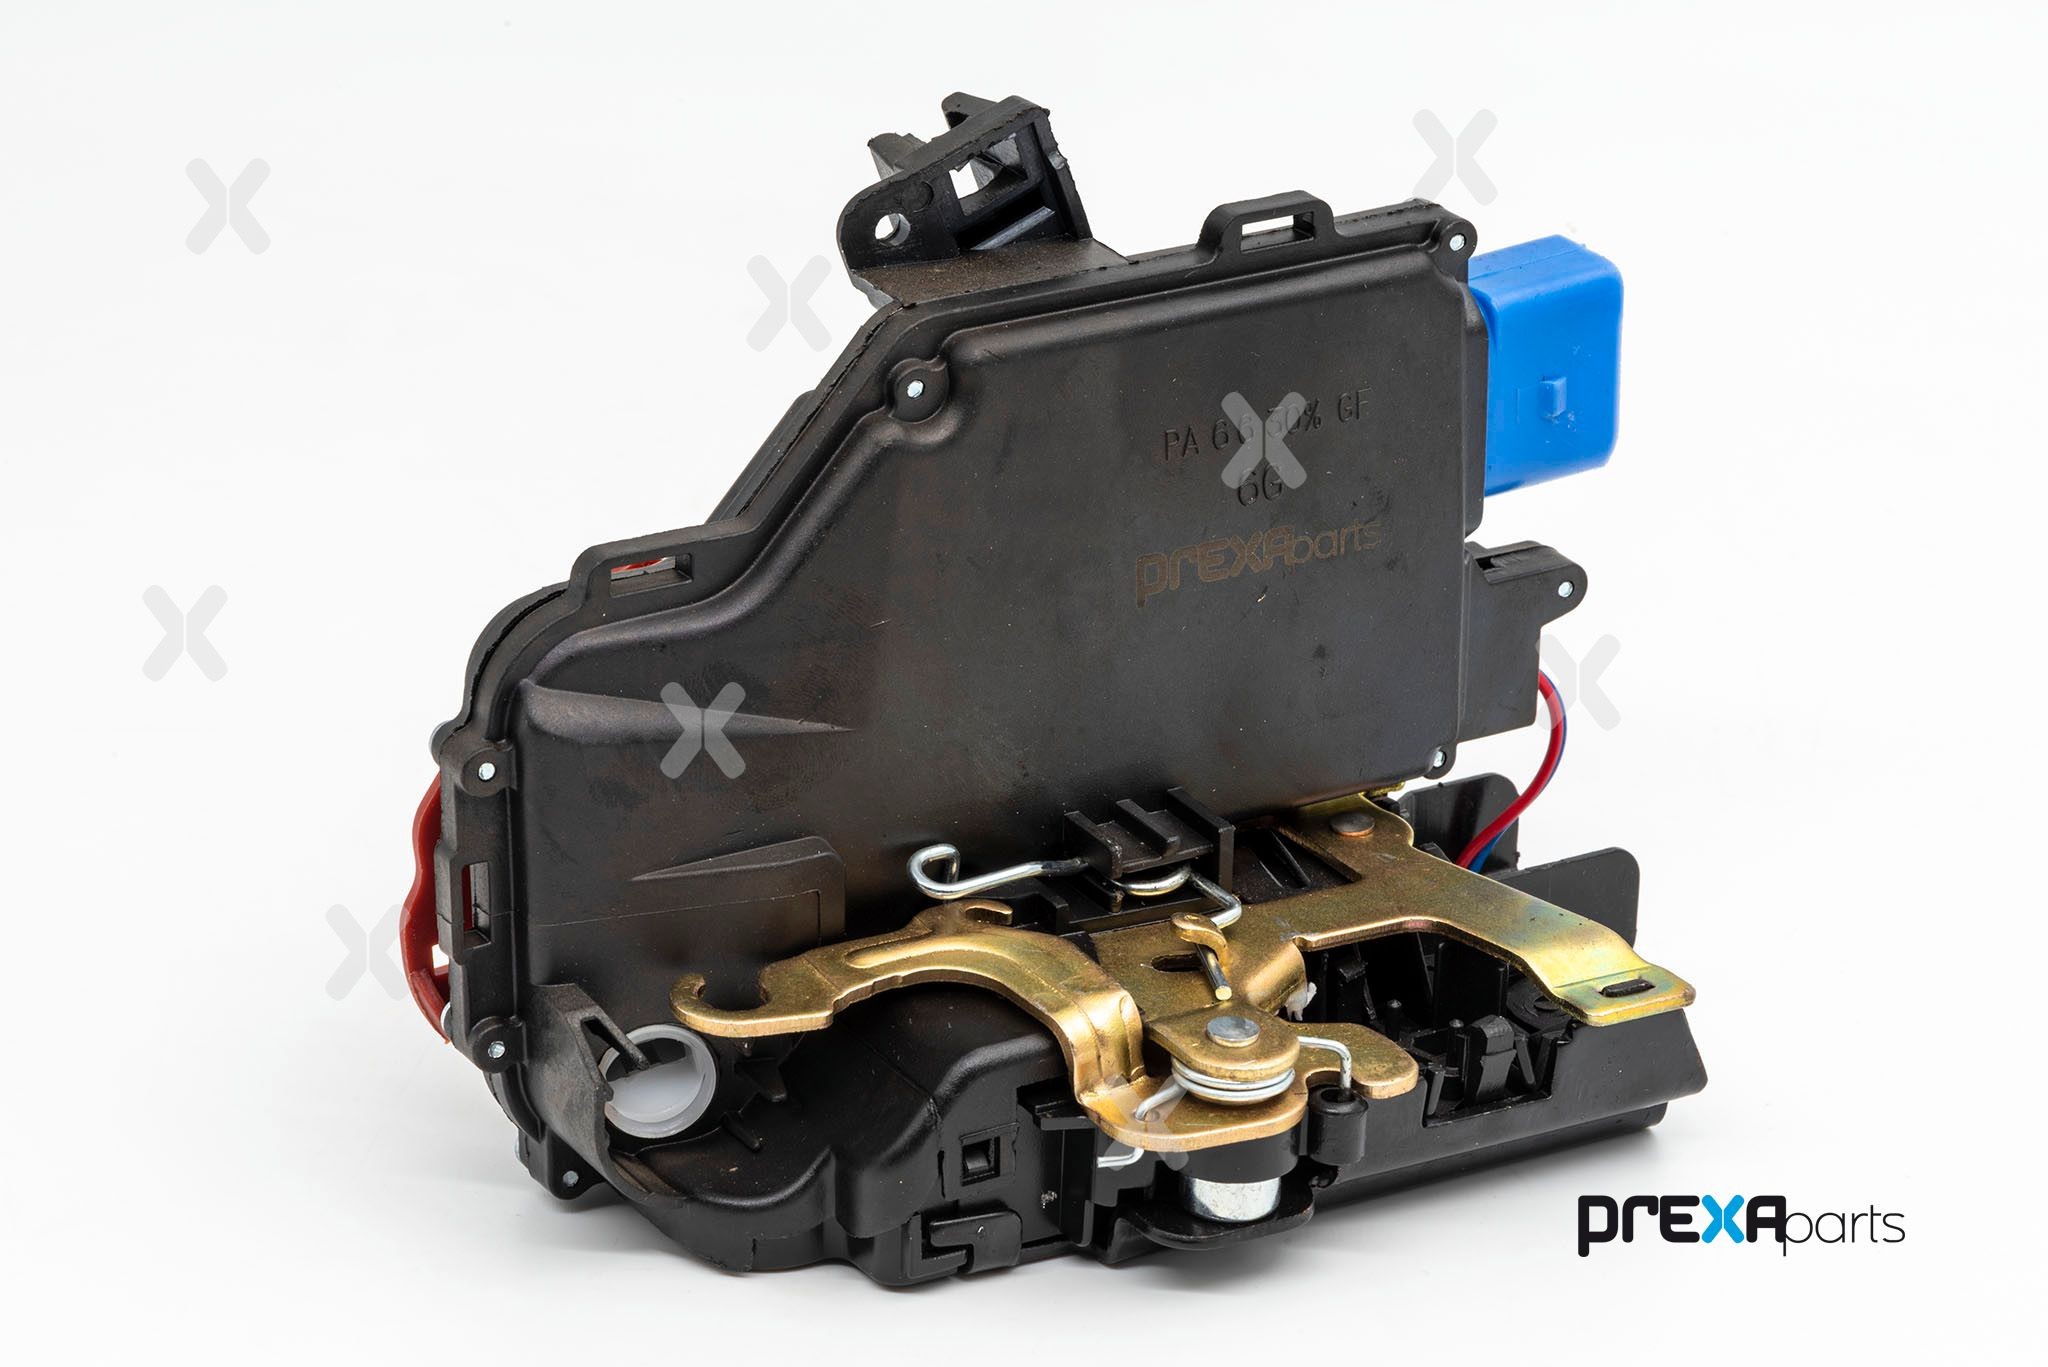 PREXAparts P111004 Zamok do dveri auta VW Phaeton (3D1, 3D2, 3D3, 3D4, 3D6, 3D7, 3D8, 3D9) 3.2 V6 241 KS / 177 kW 2004